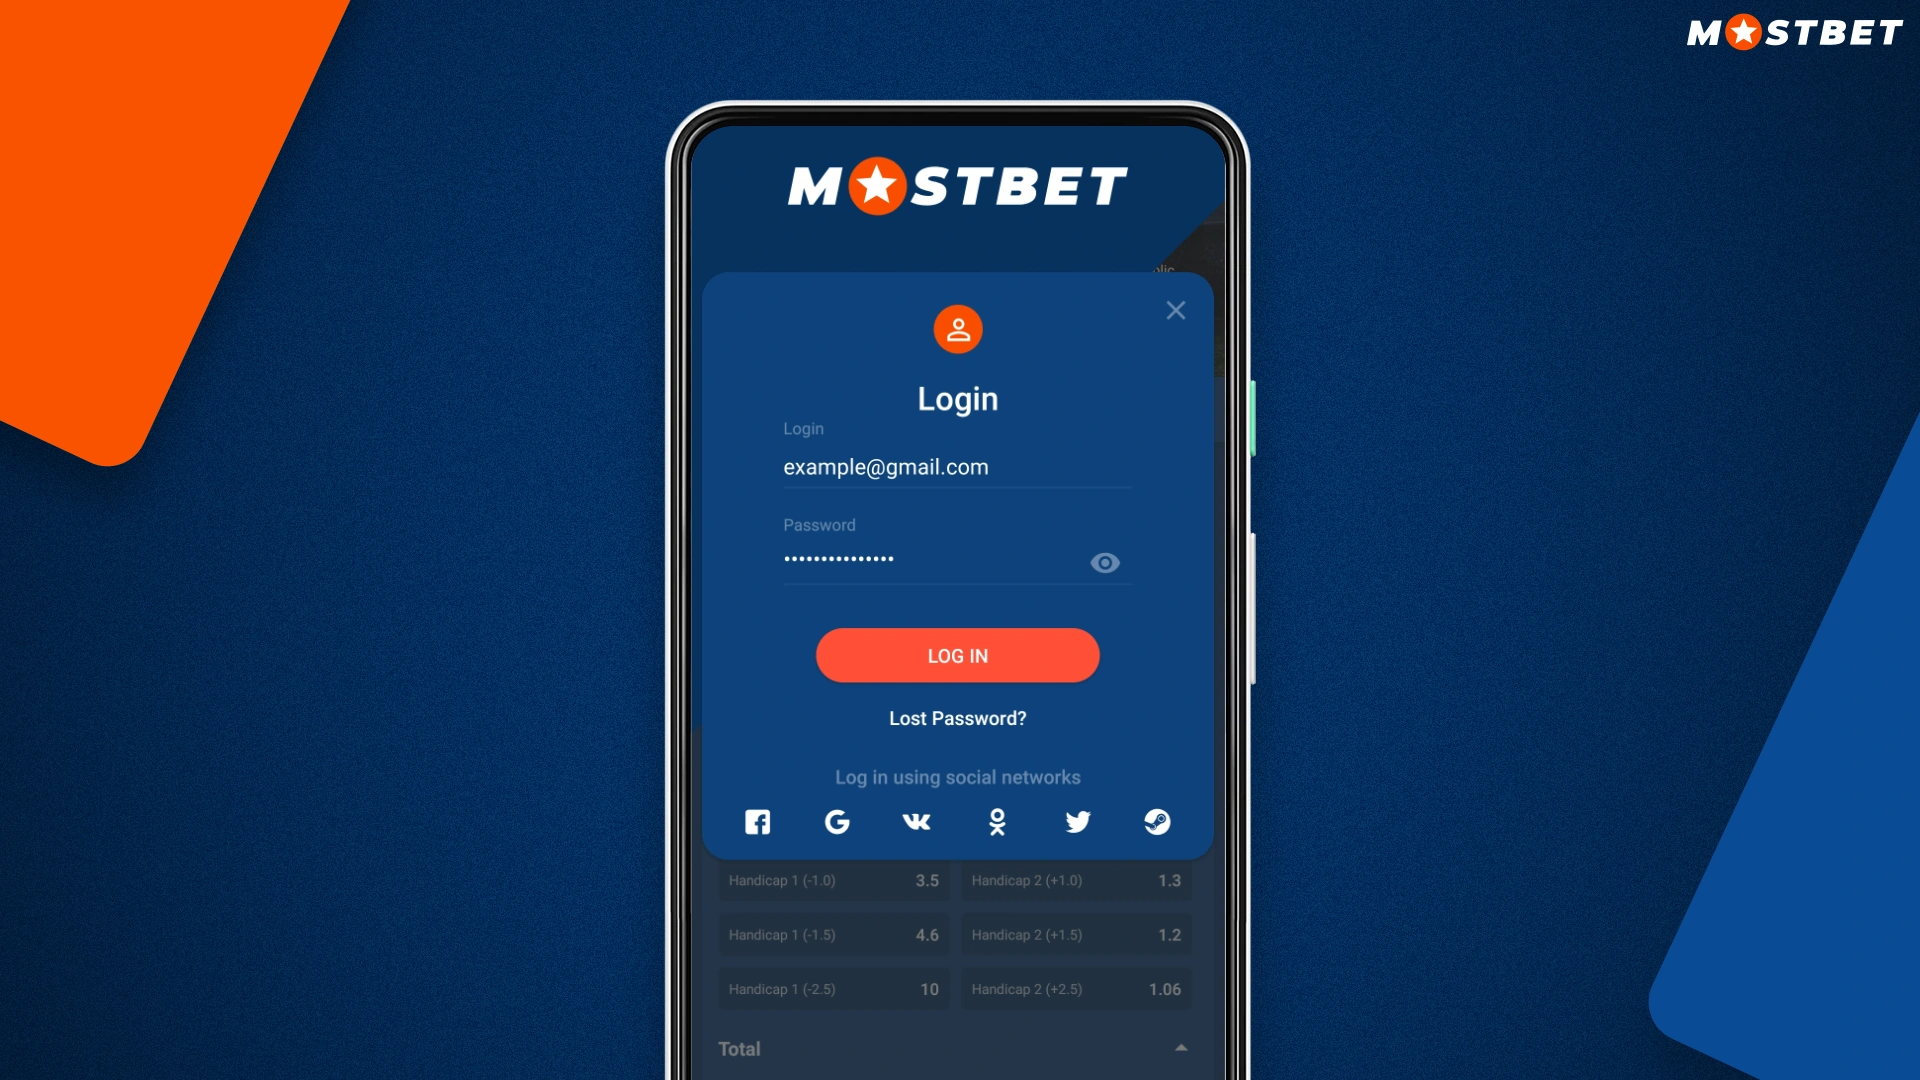 Chcete-li se přihlásit ke svému účtu v aplikaci Mostbet, musíte použít údaje zadané při registraci